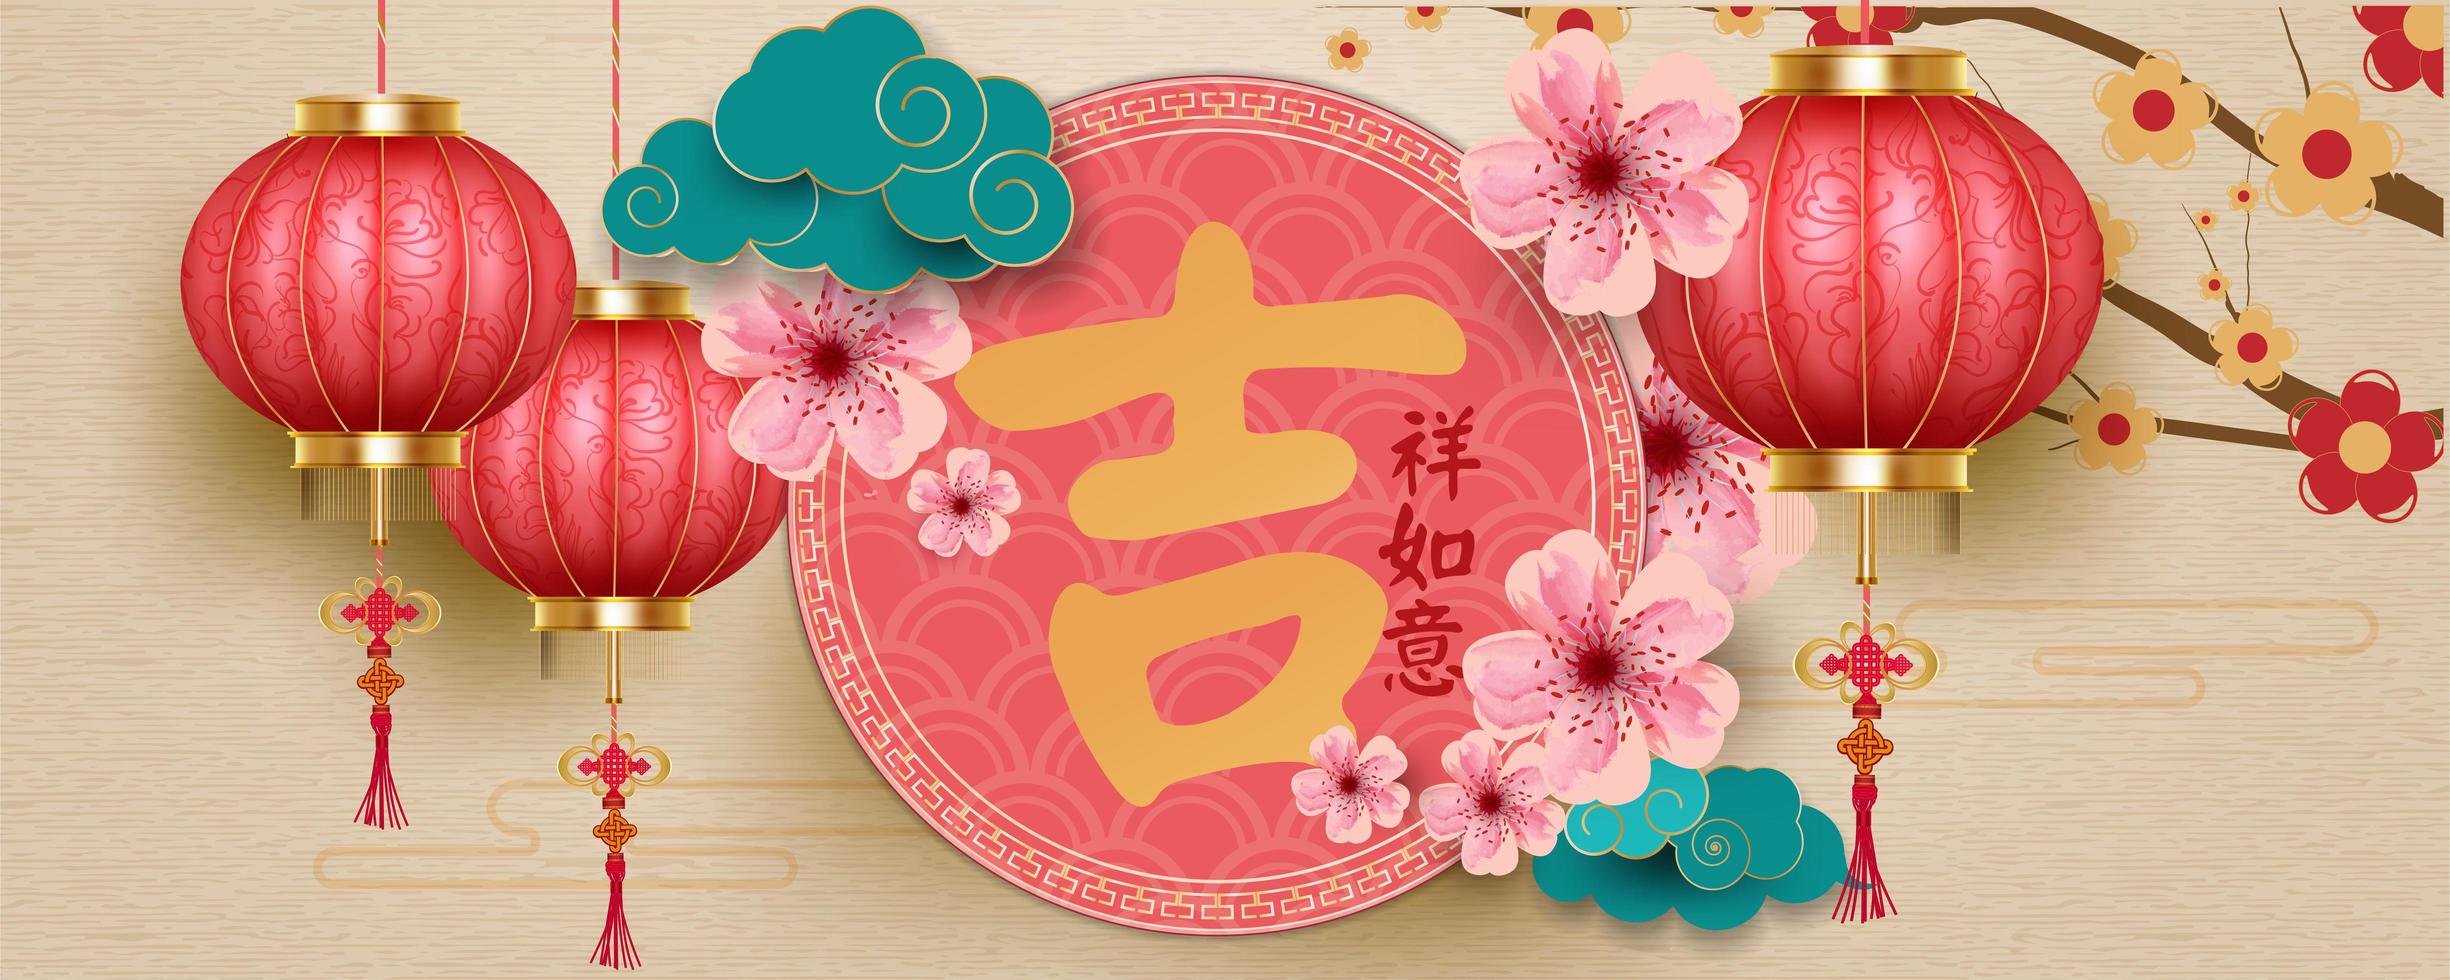 Priorità bassa cinese di nuovo anno con lanterne, fiori e nuvole vettore